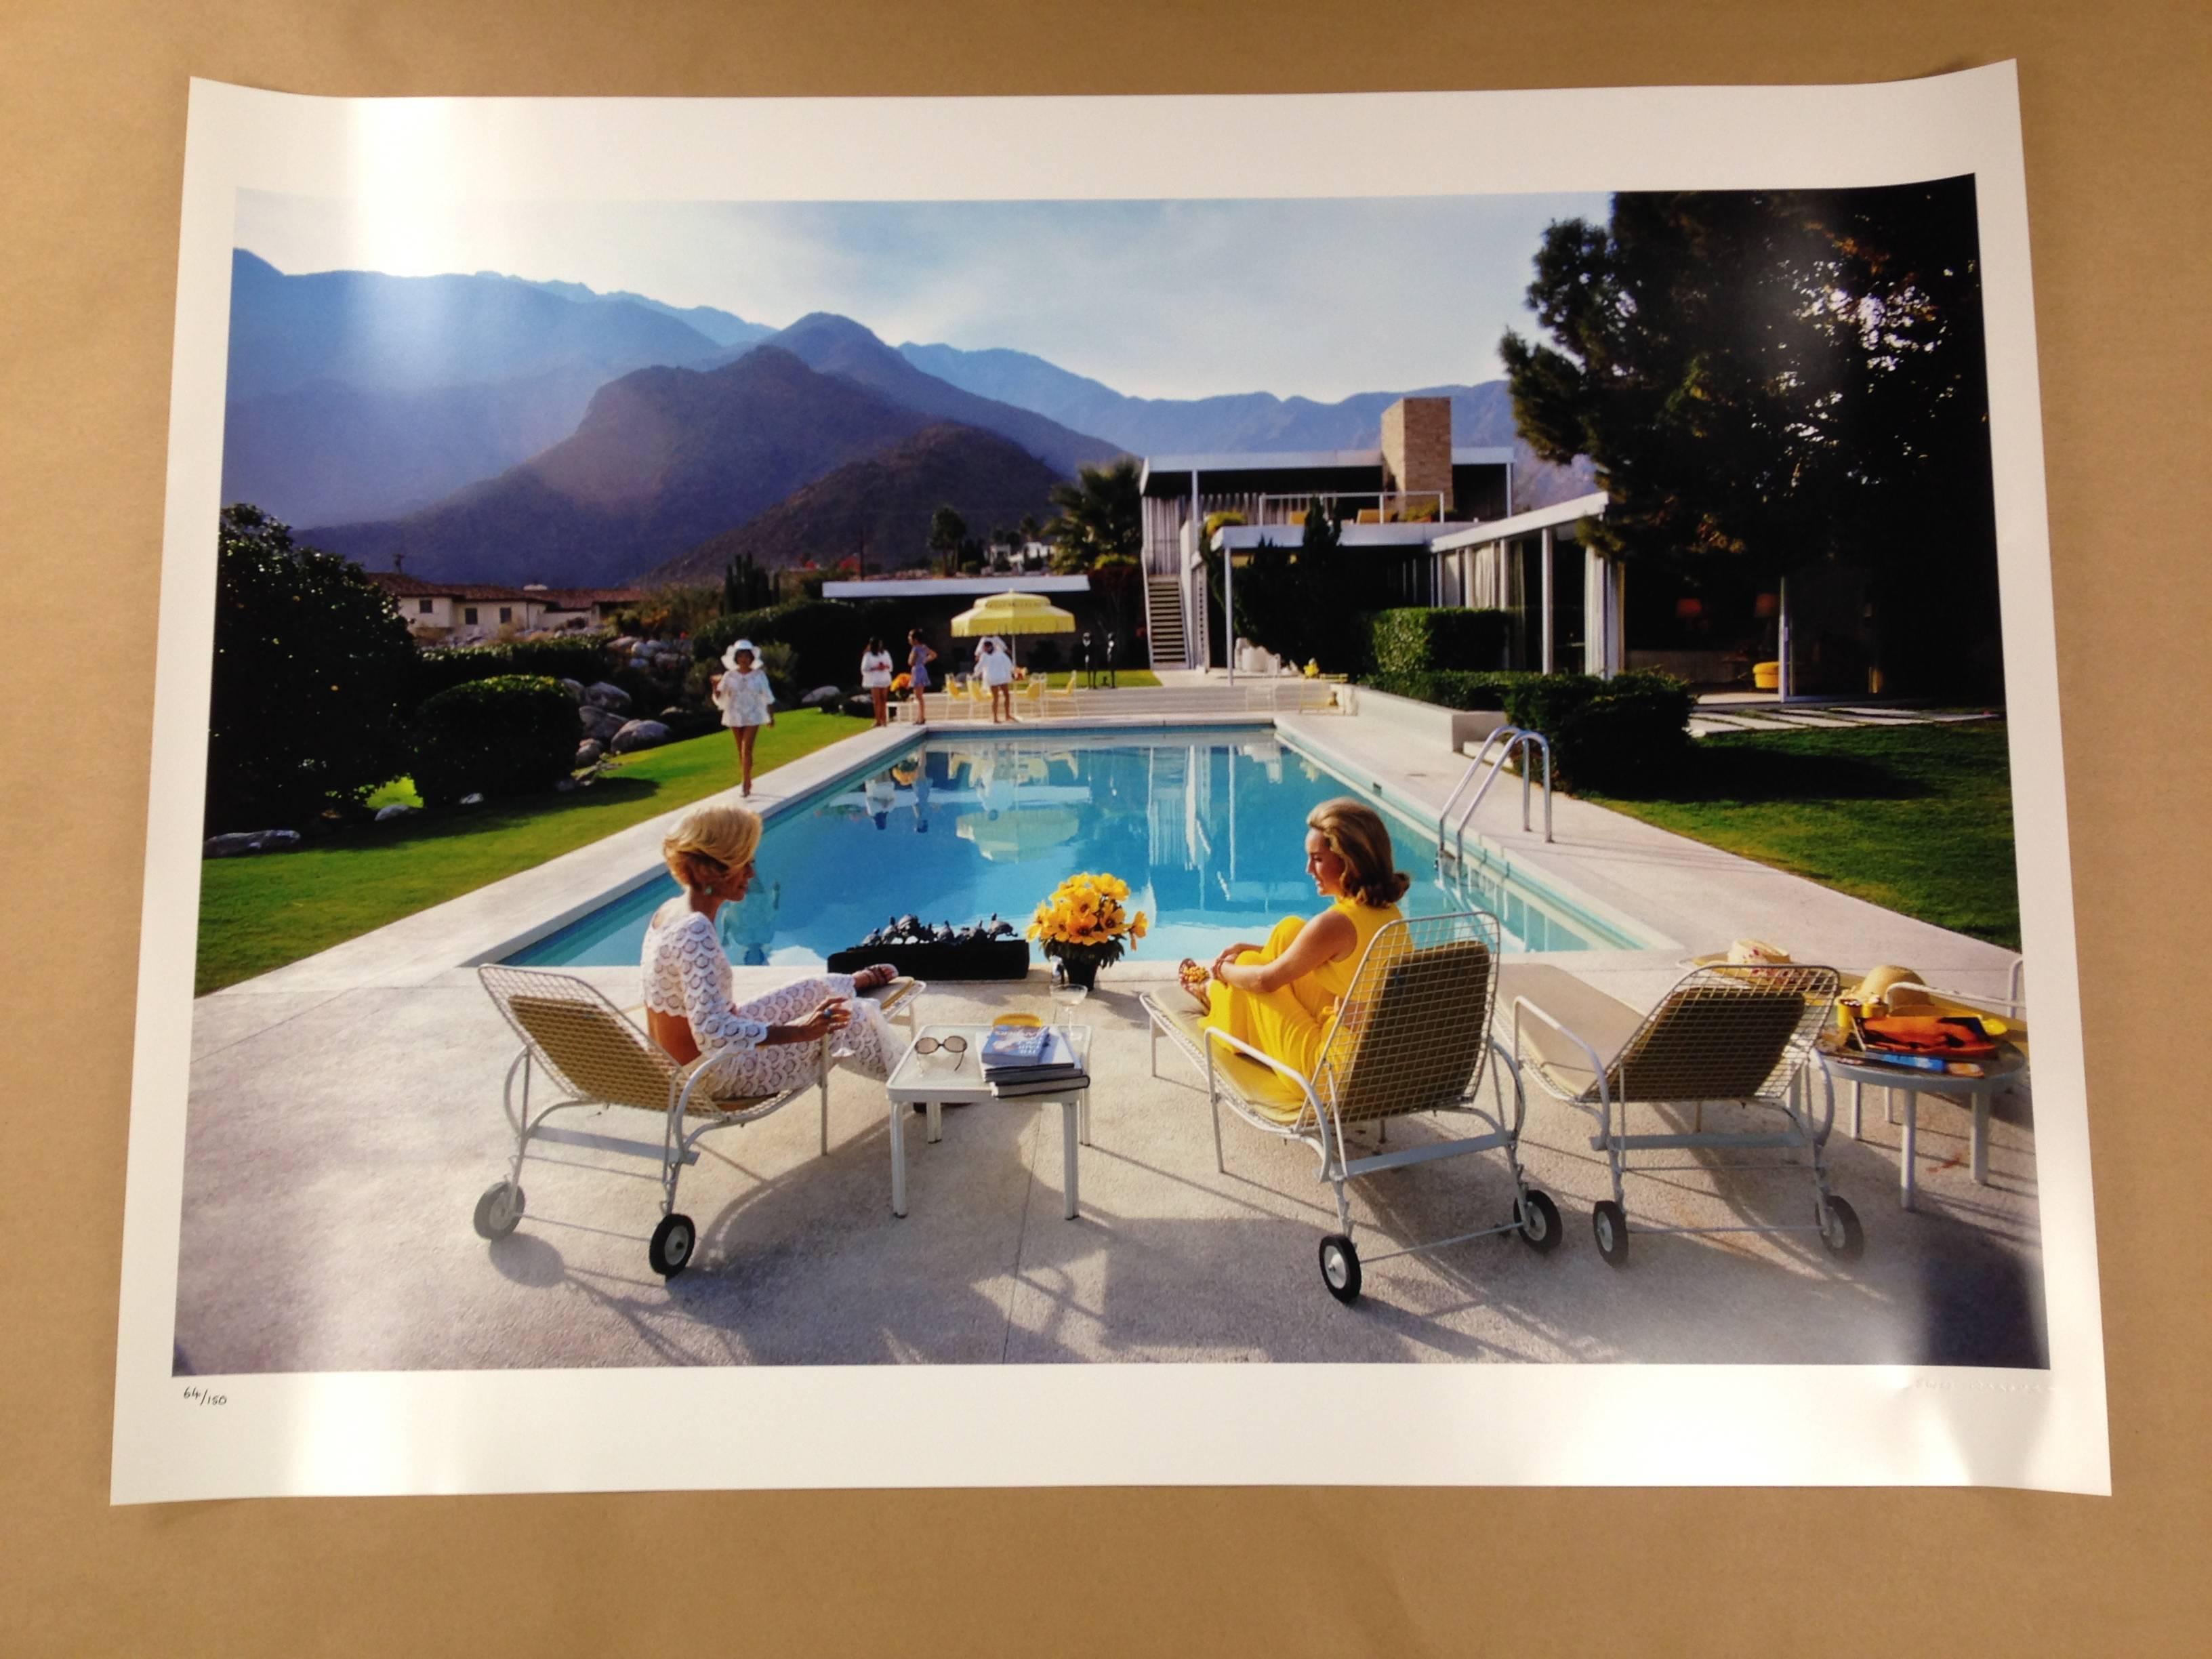 1970 : Une maison dans le désert à Palm Springs, conçue par Richard Neutra pour Edgar Kaufman. Lita Baron s'approche de Nelda Linsk, à droite, épouse du marchand d'art Joseph Linsk qui parle à une amie, Helen Dzo Dzo. Il s'agit de l'image sœur